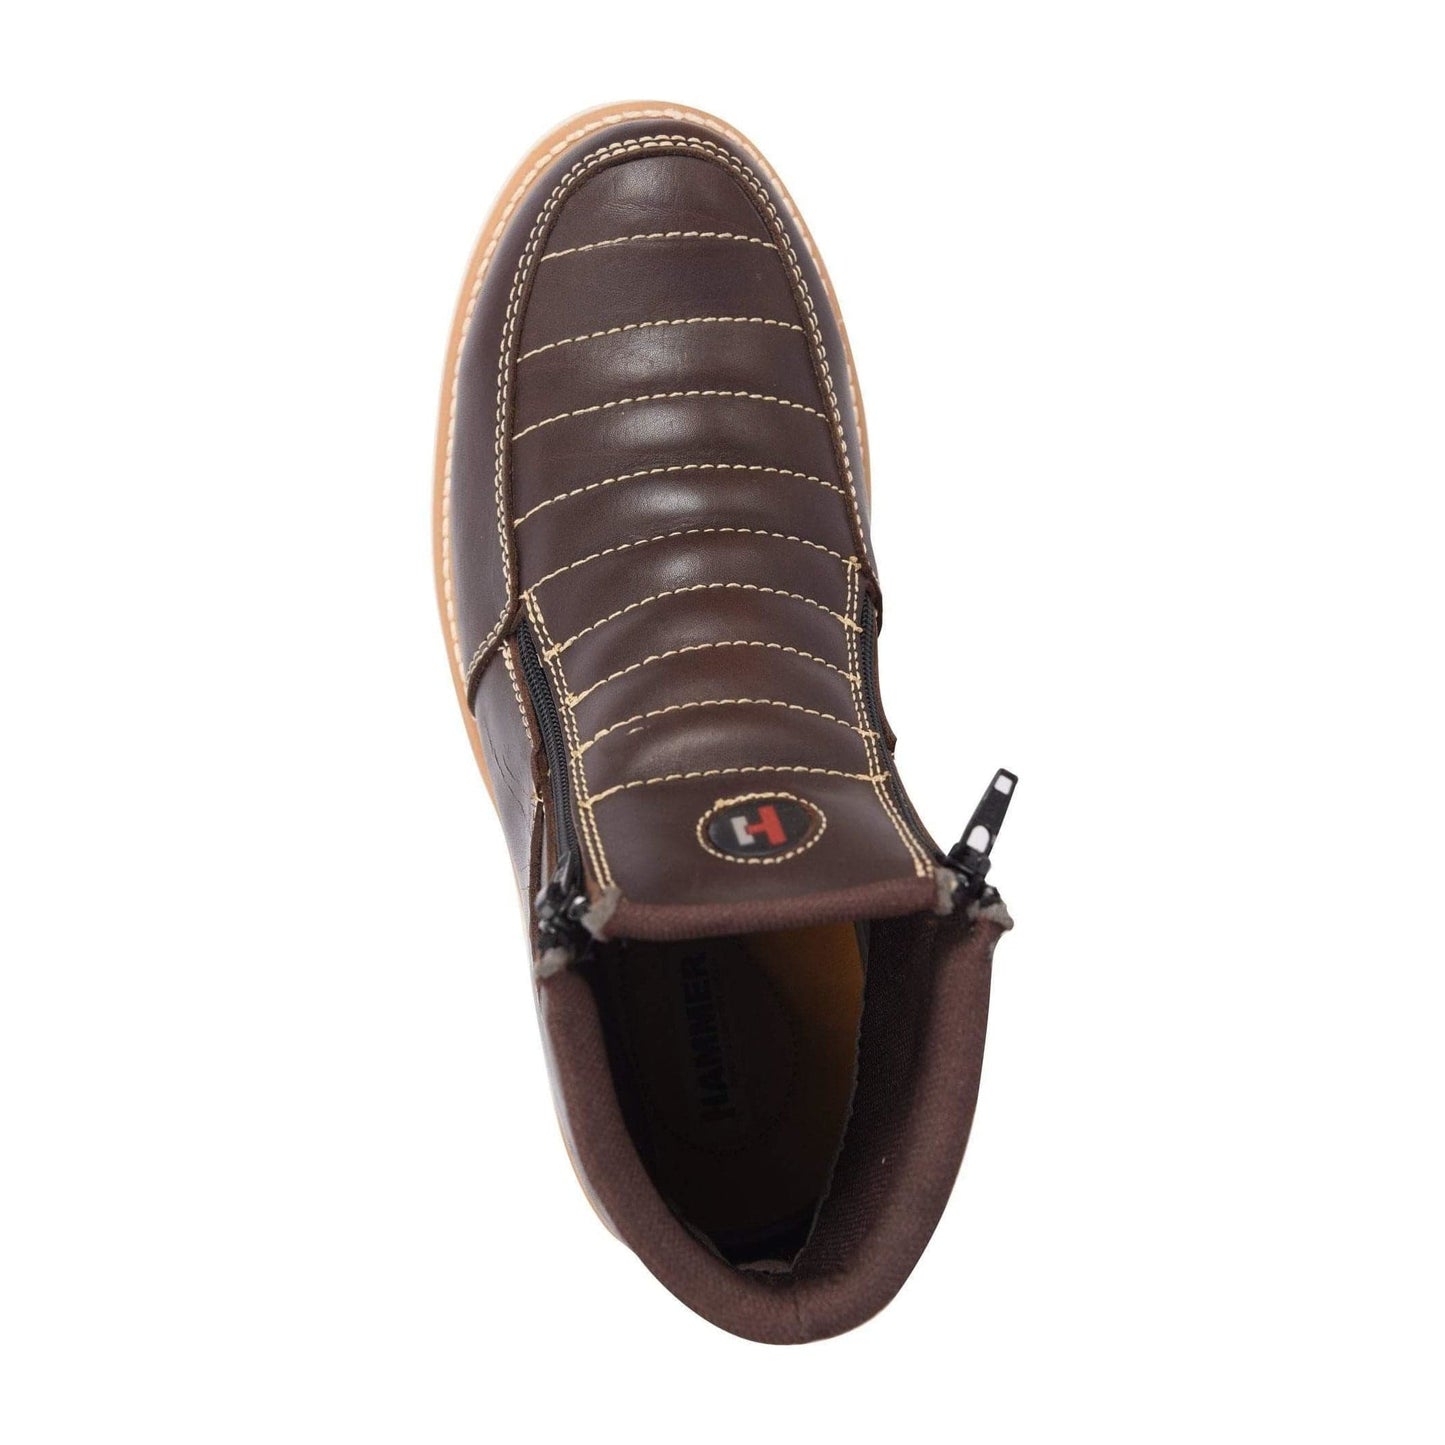 HM330 Brown Short Boots Zipper